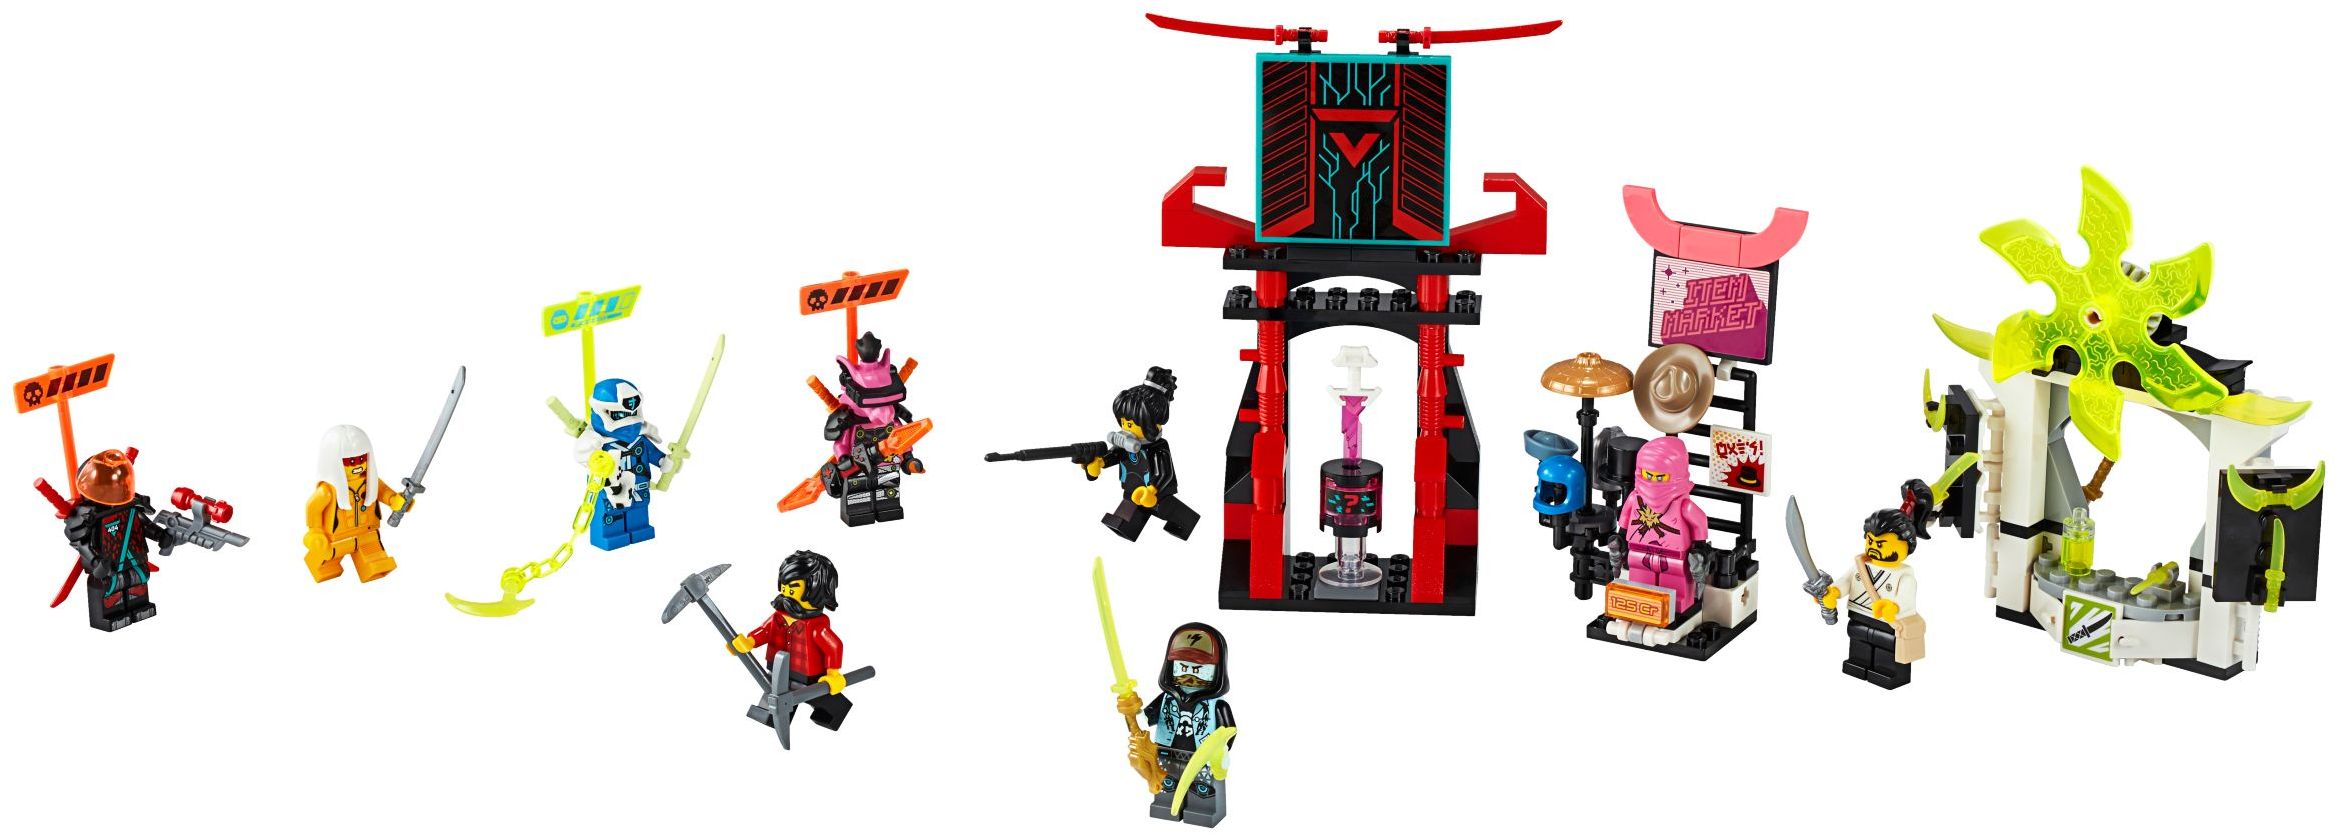 2020 NINJAGO sets revealed! | Brickset: LEGO set guide and database